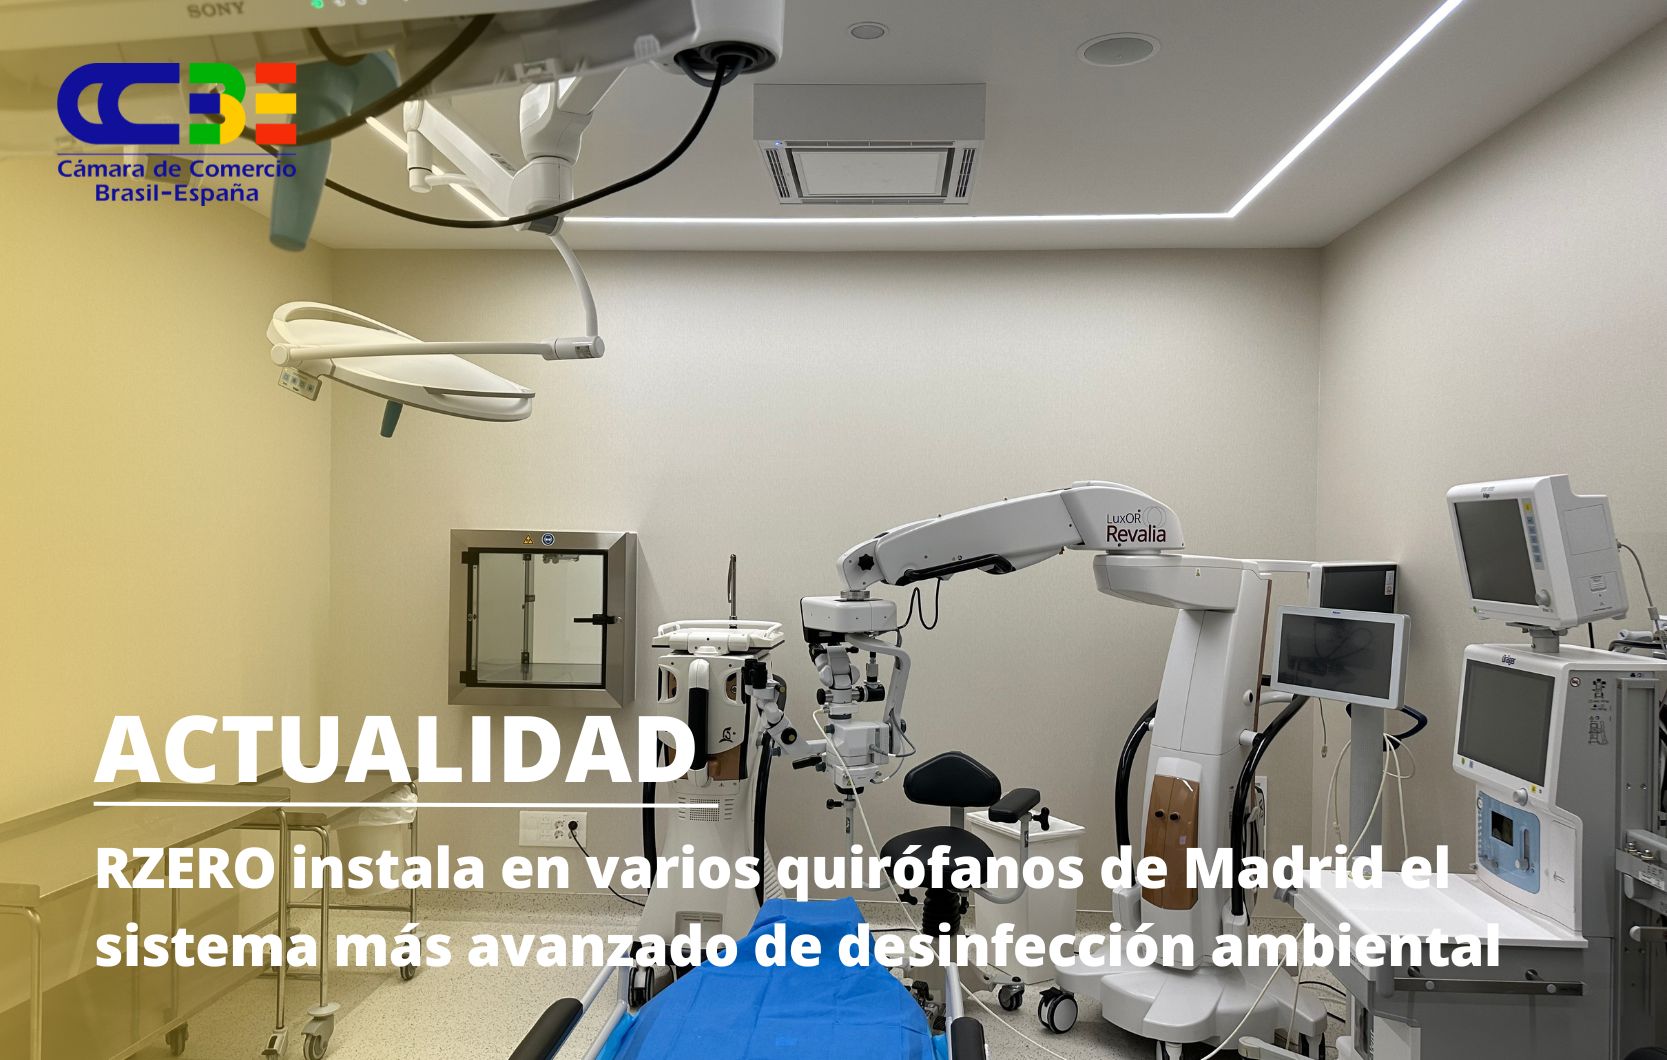 RZERO instala en varios quirófanos de Madrid el sistema más avanzado de desinfección ambiental